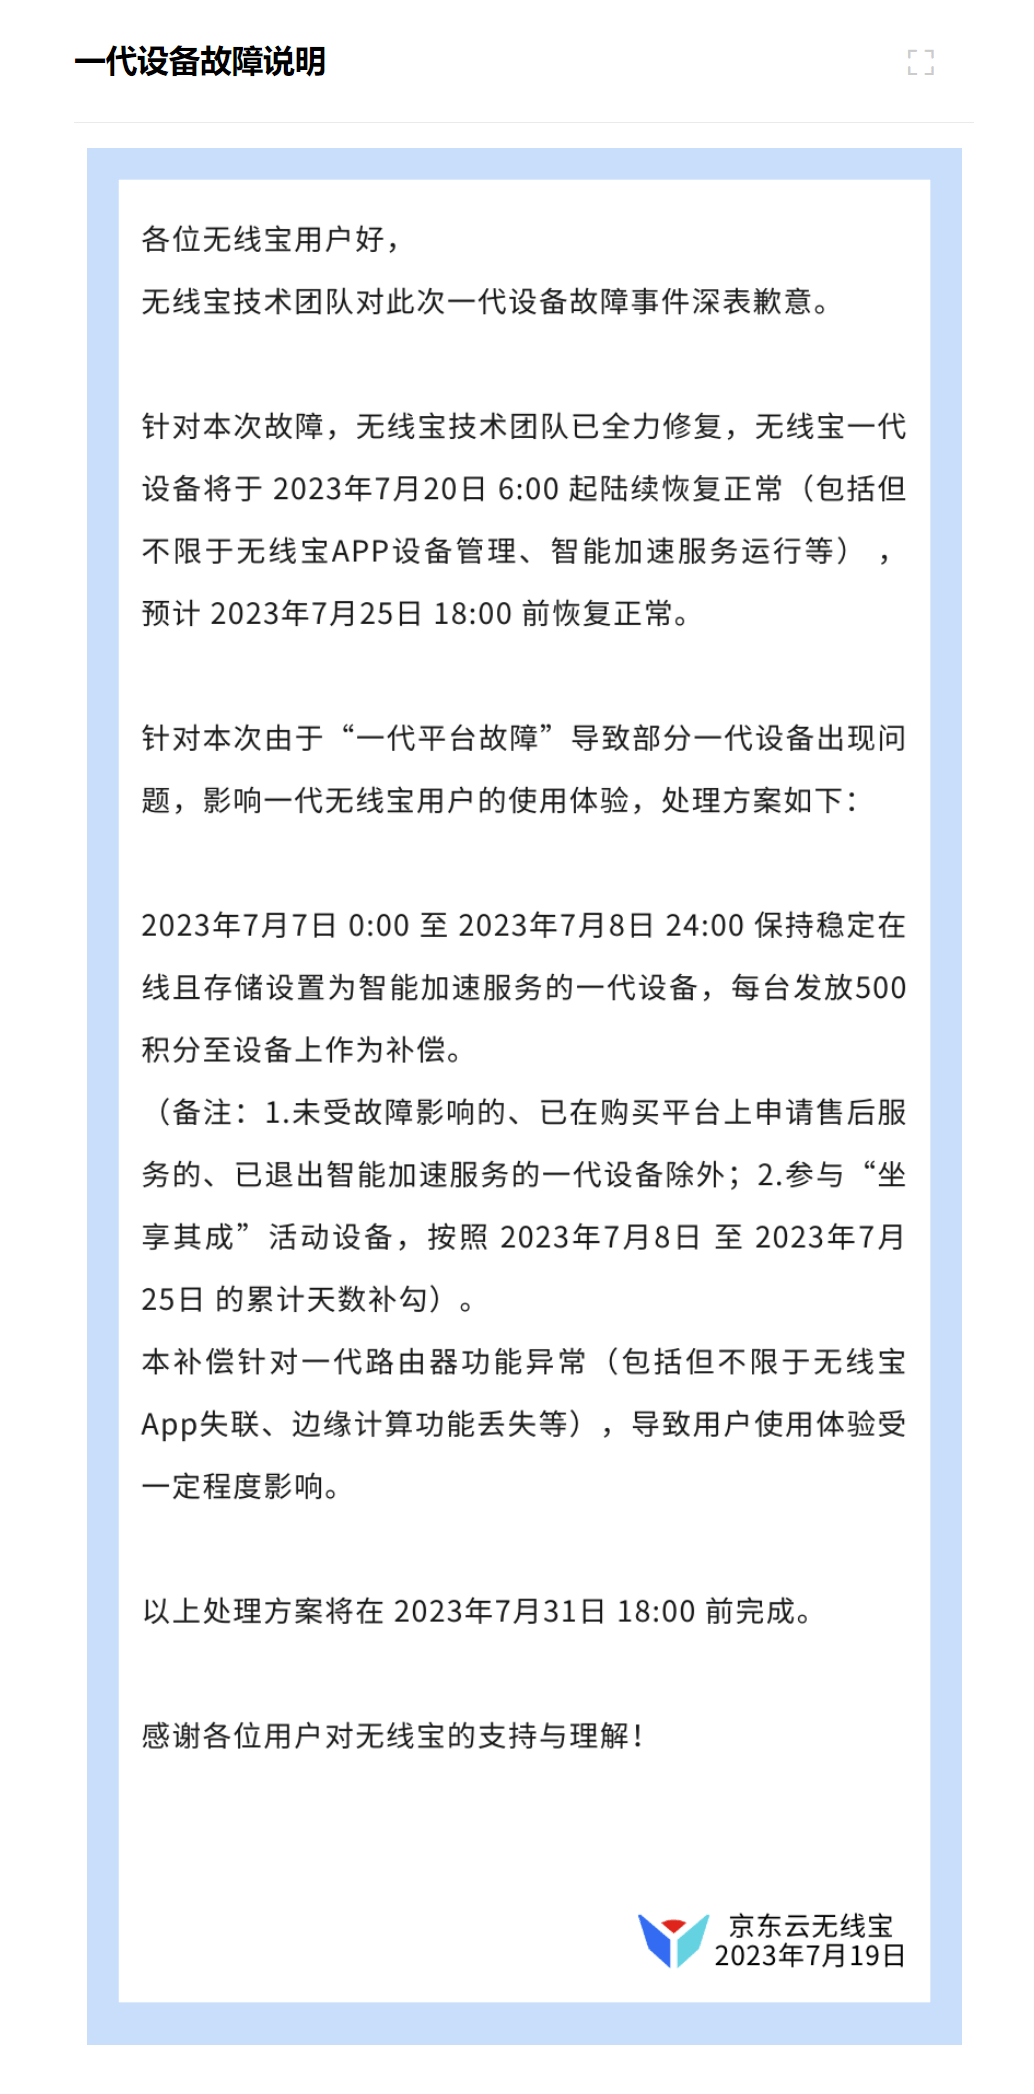 京东无线宝一代设备 7 月 20 日起陆续恢复正常，处理方案公布 